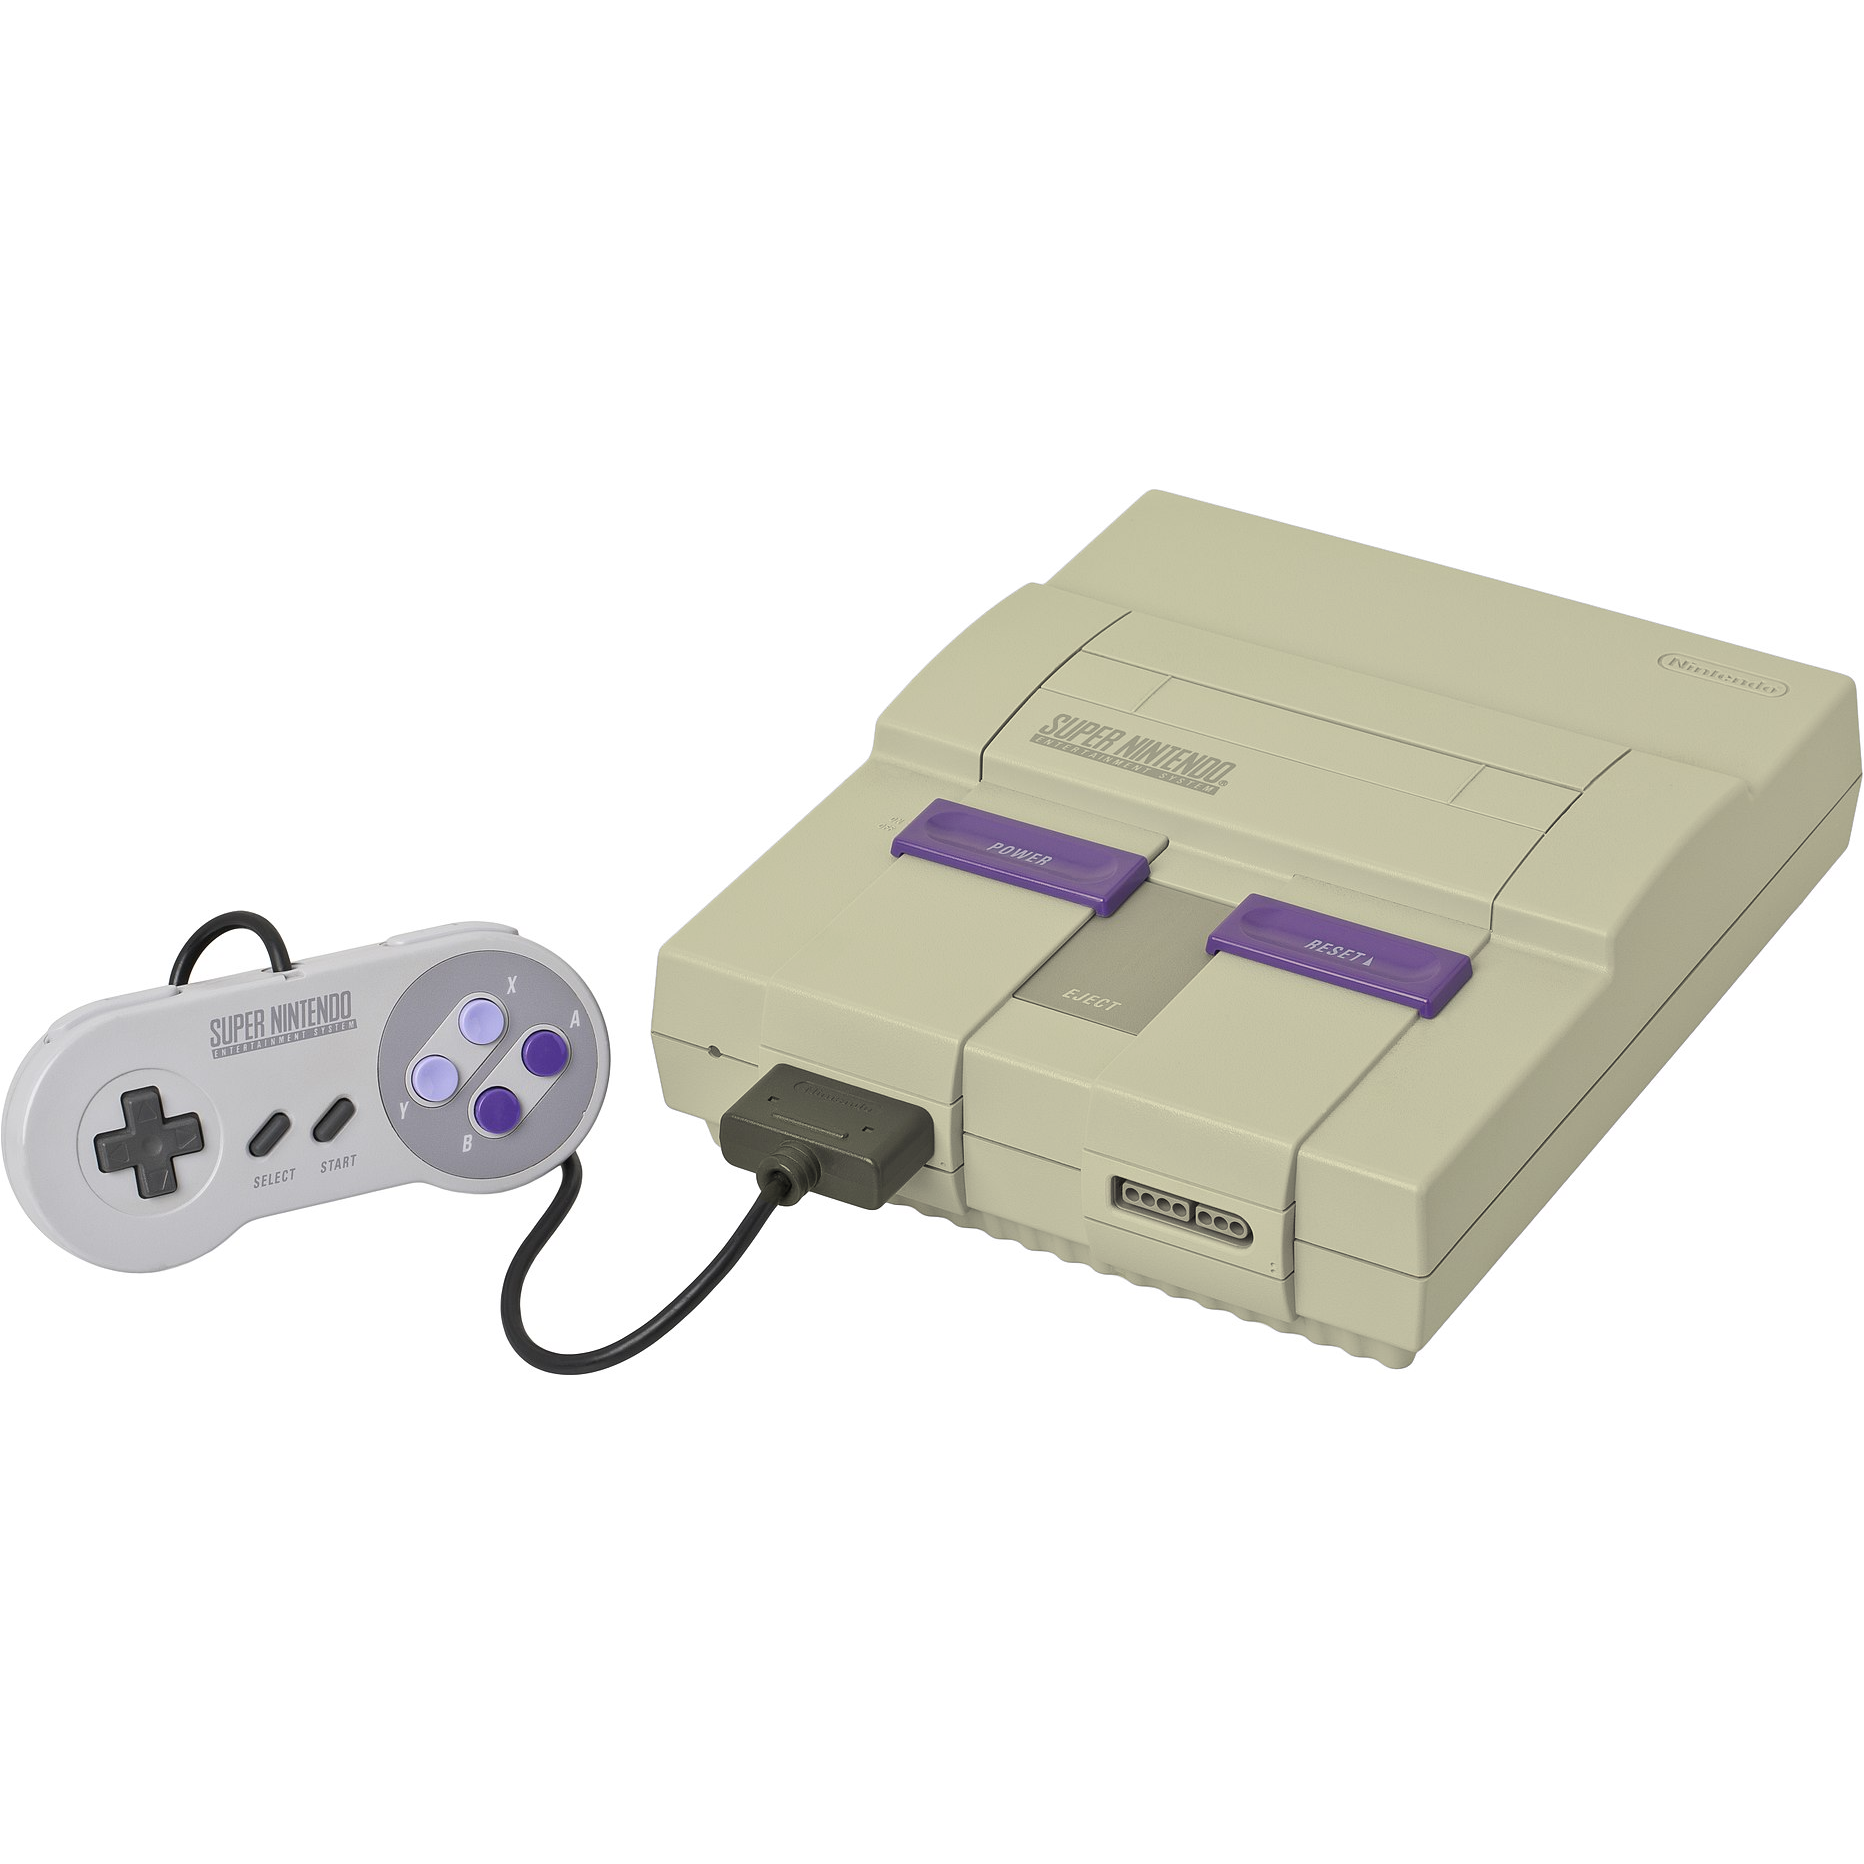 Super Nintendo Entertainment System (Grade 2)